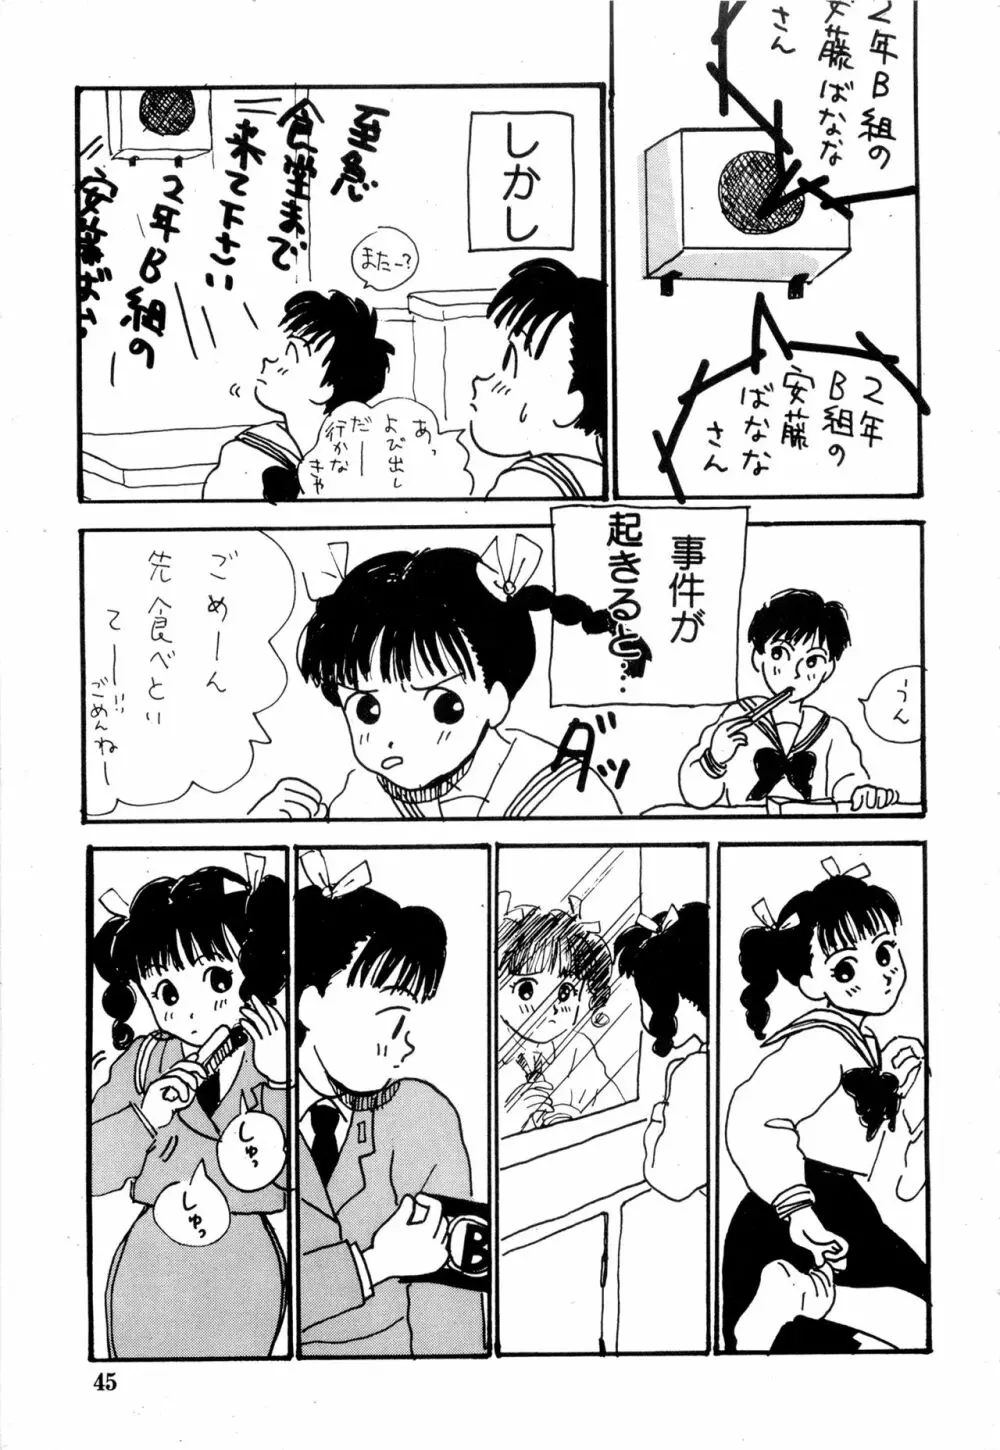 WAKE UP!! がんばれ婦警さんコミック VOL.2 45ページ